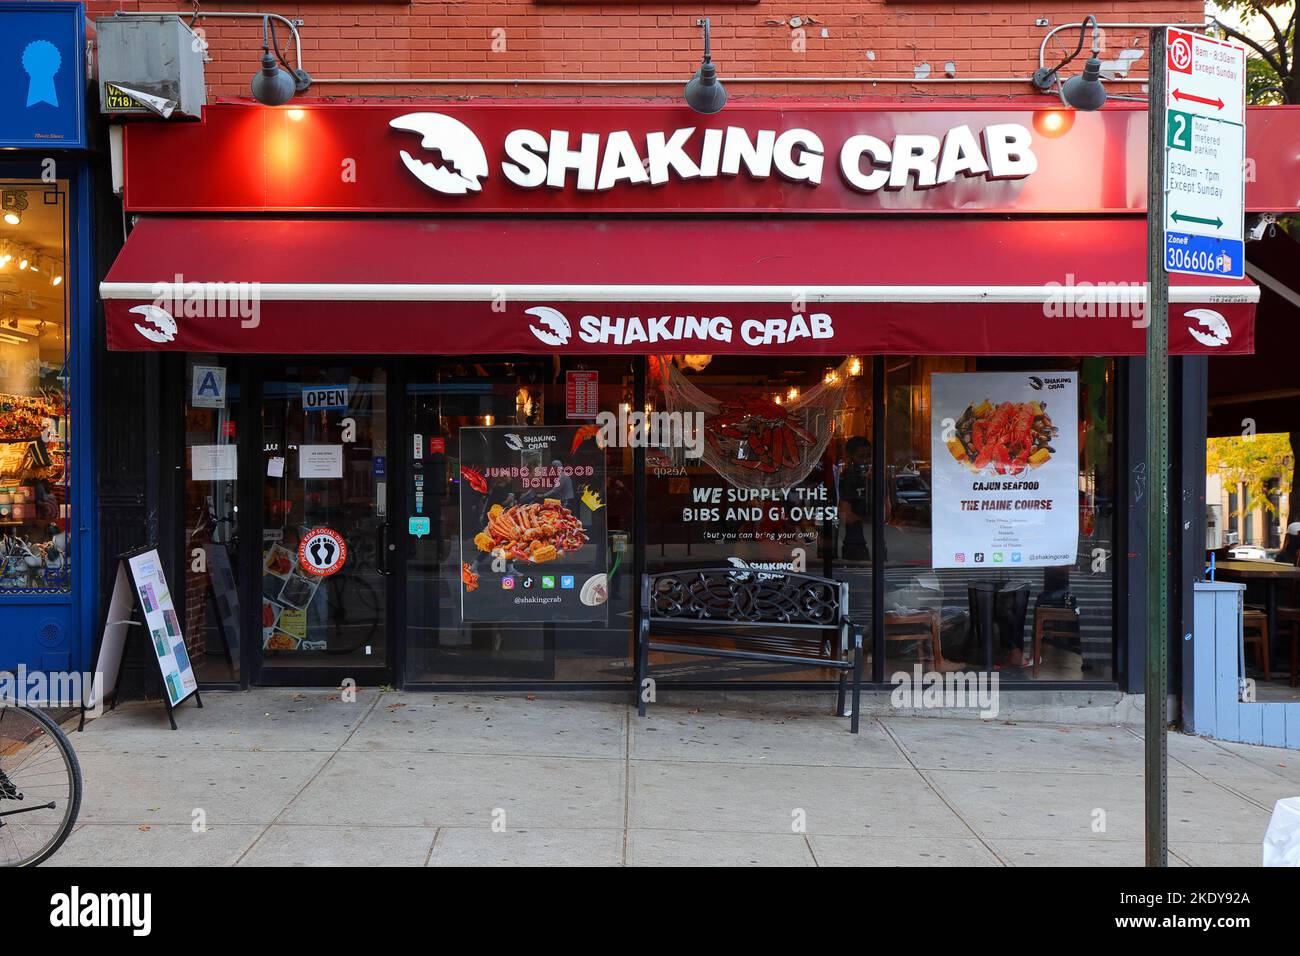 Shaking Crab, 230 5th Ave, Brooklyn, Nueva York, Nueva York, Nueva York, Nueva York, foto del escaparate de un restaurante de mariscos cajún en Park Slope. Foto de stock